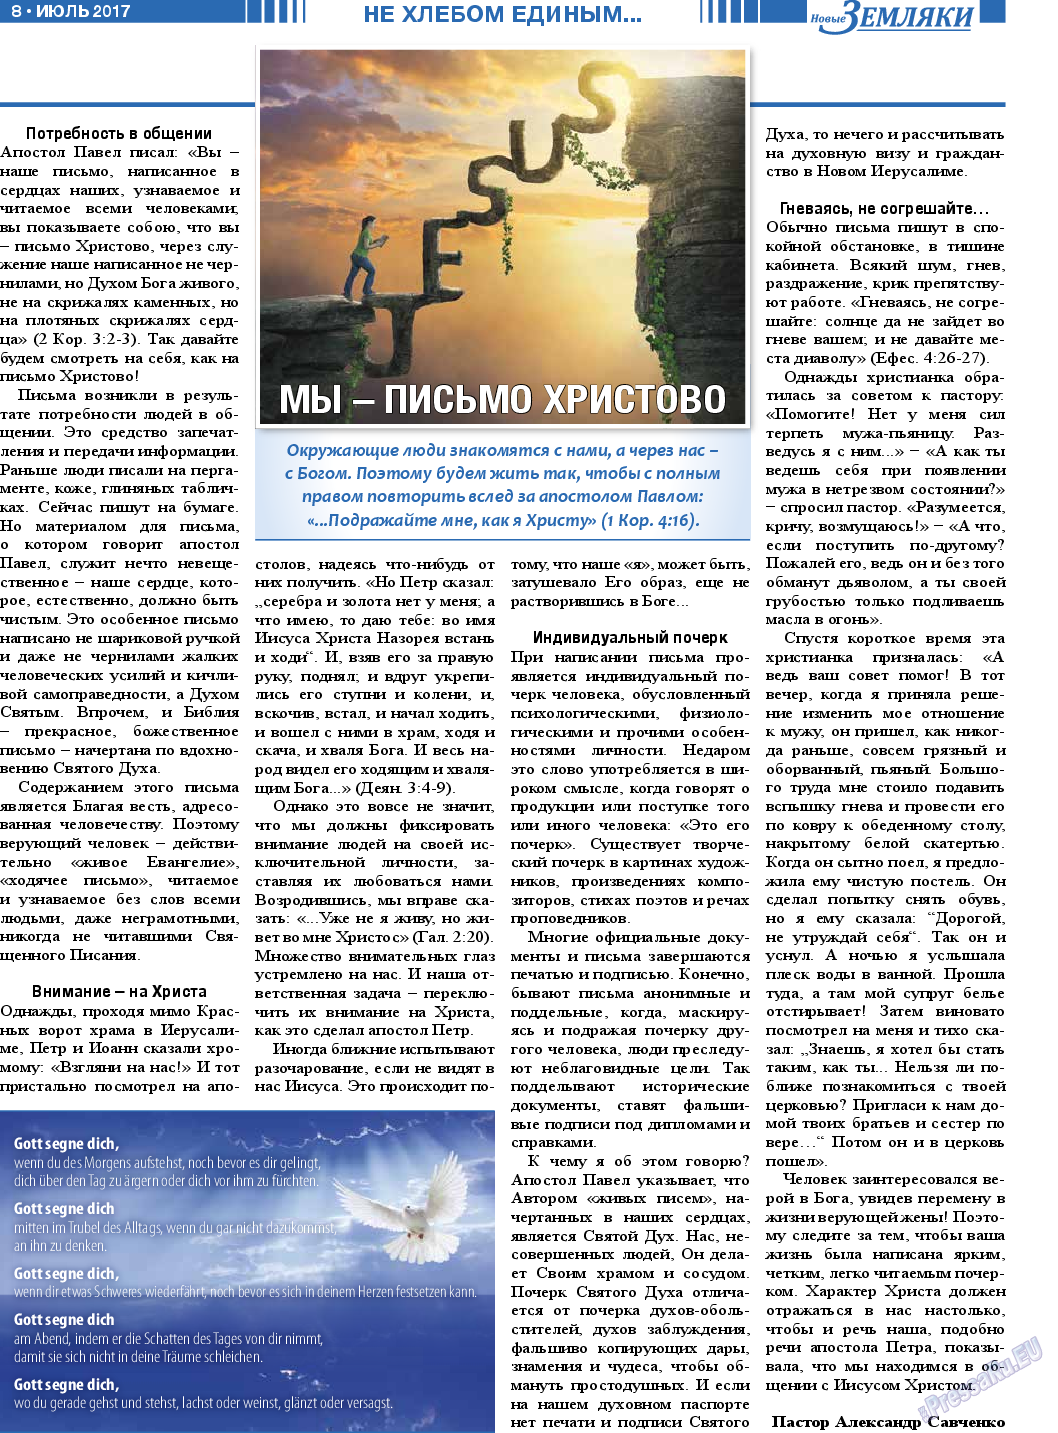 Новые Земляки, газета. 2017 №7 стр.8